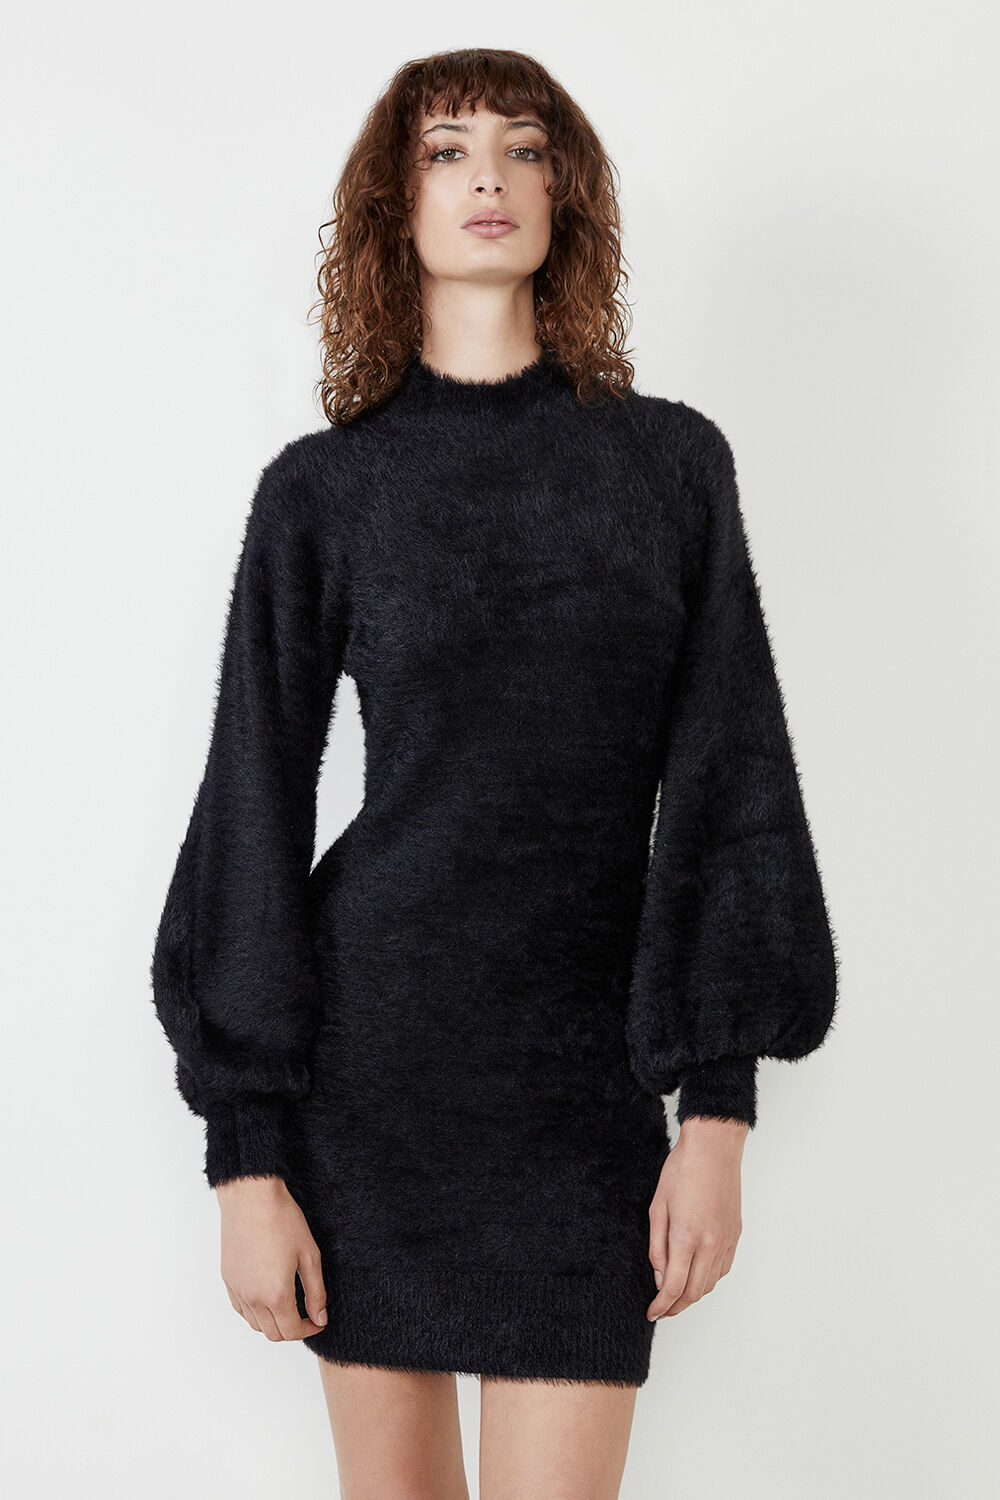 Bell Sleeve Knit Dress in Black | Bardot